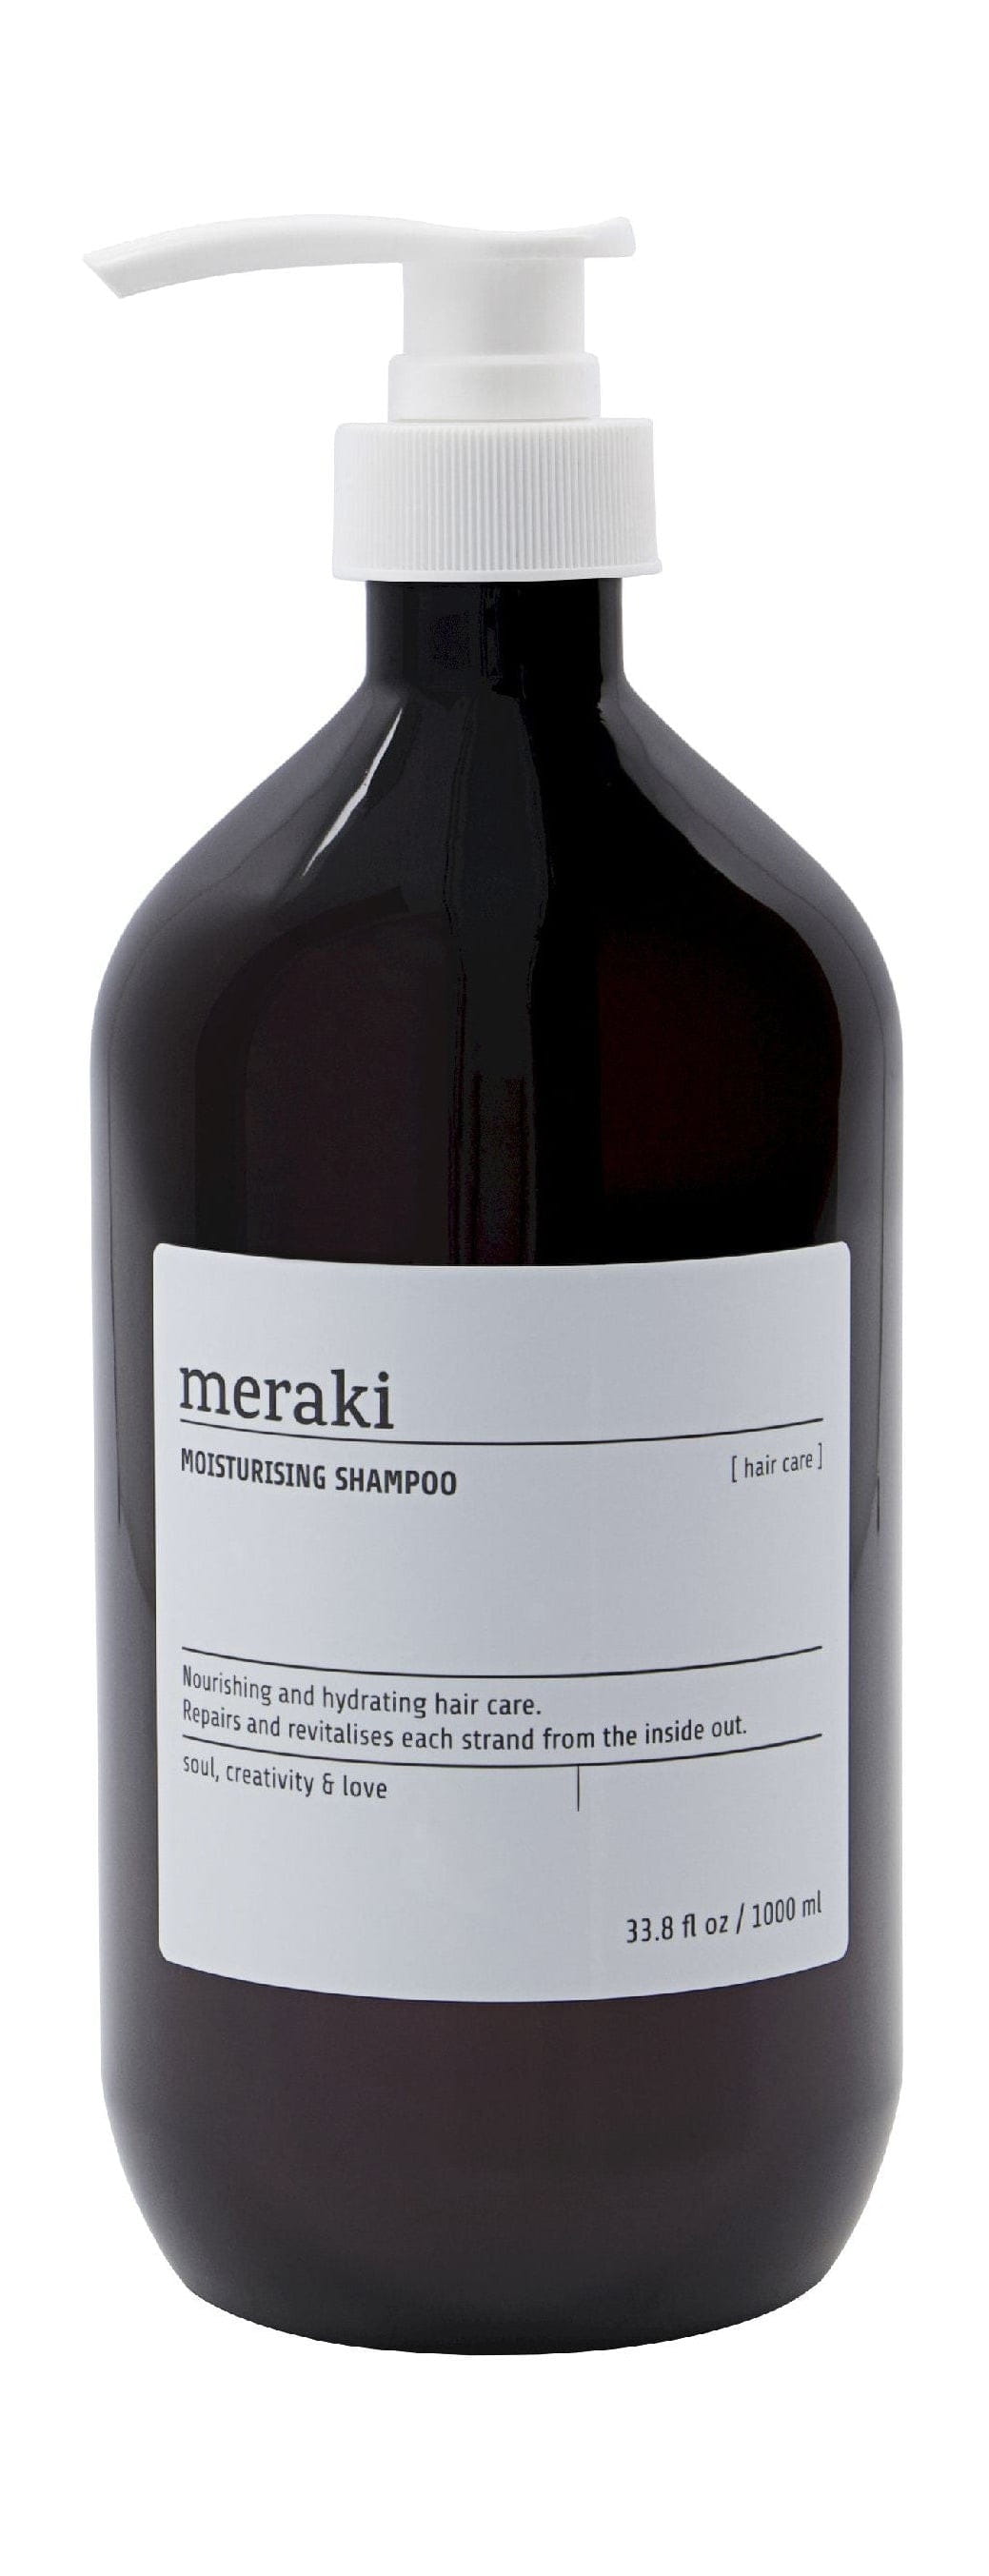 Champú hidratante de Meraki 1 L